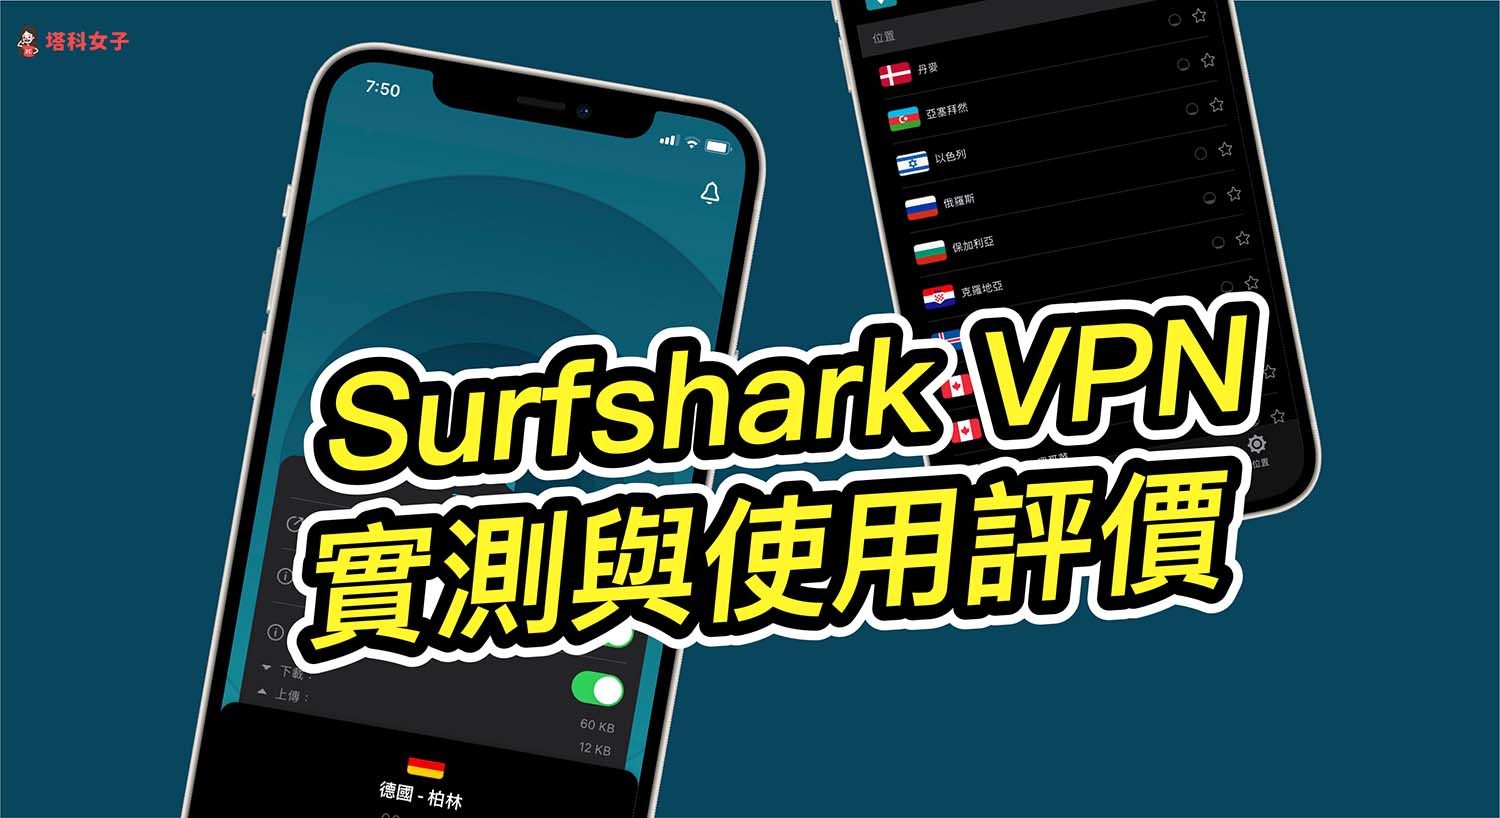 Surfshark VPN 評價好嗎？連線速度實測與使用體驗一次看